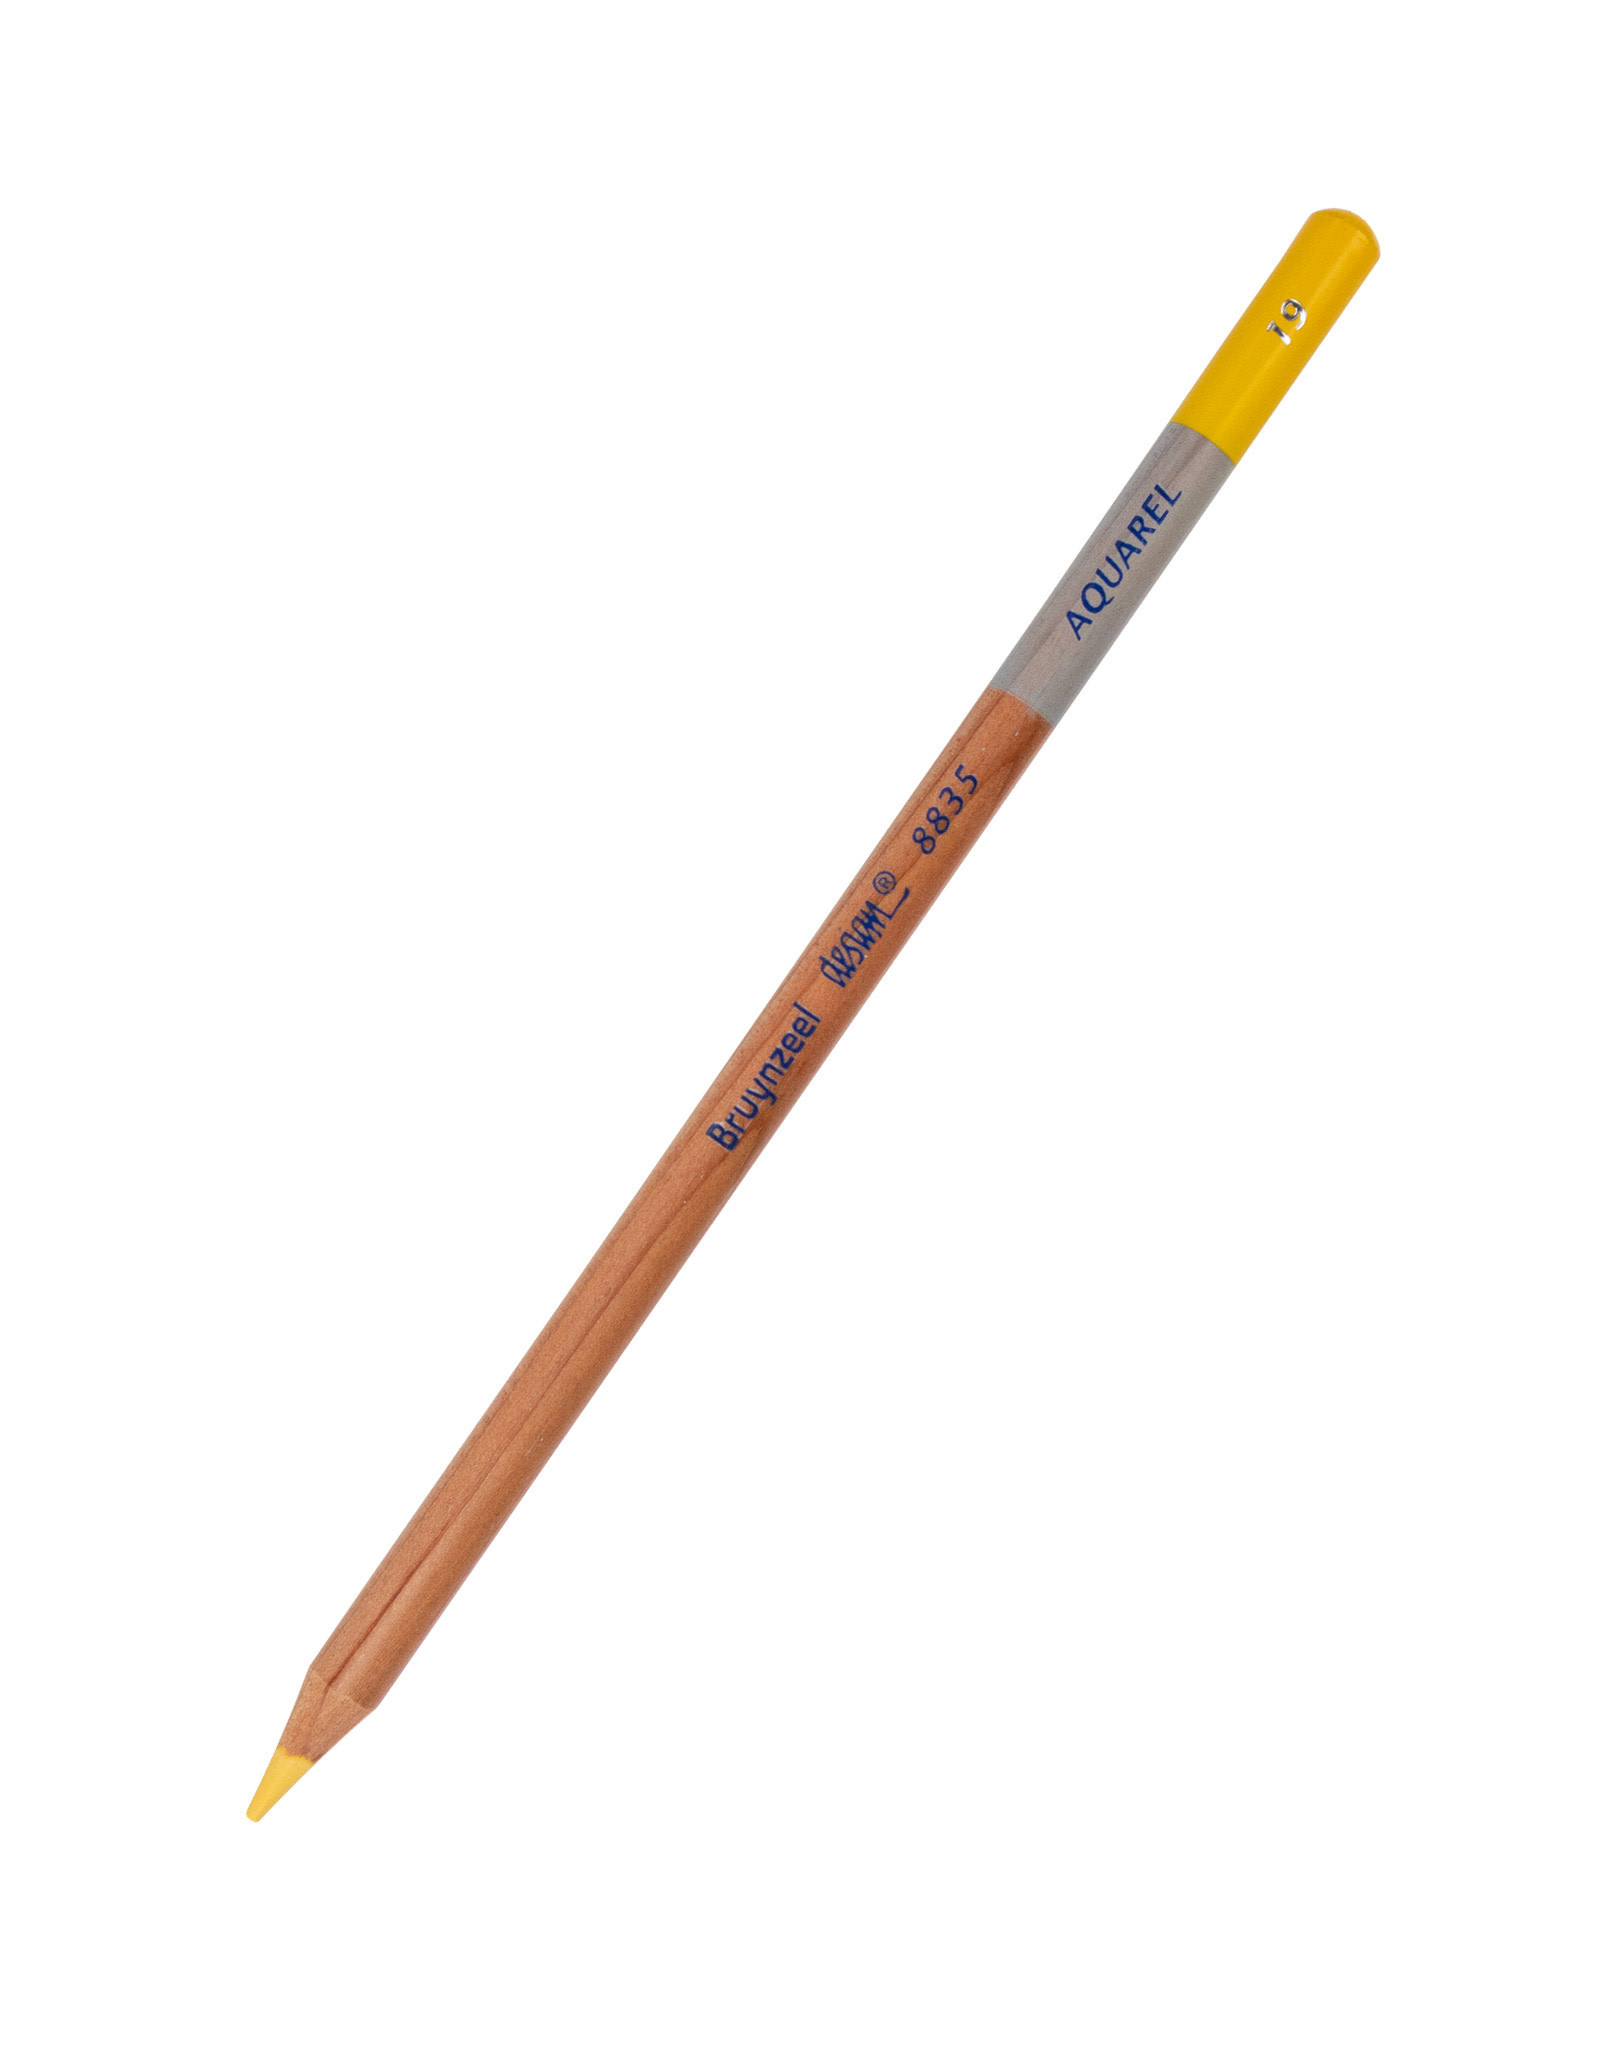 Royal Talens Bruynzeel Design Aquarel Pencil, Naples Yellow